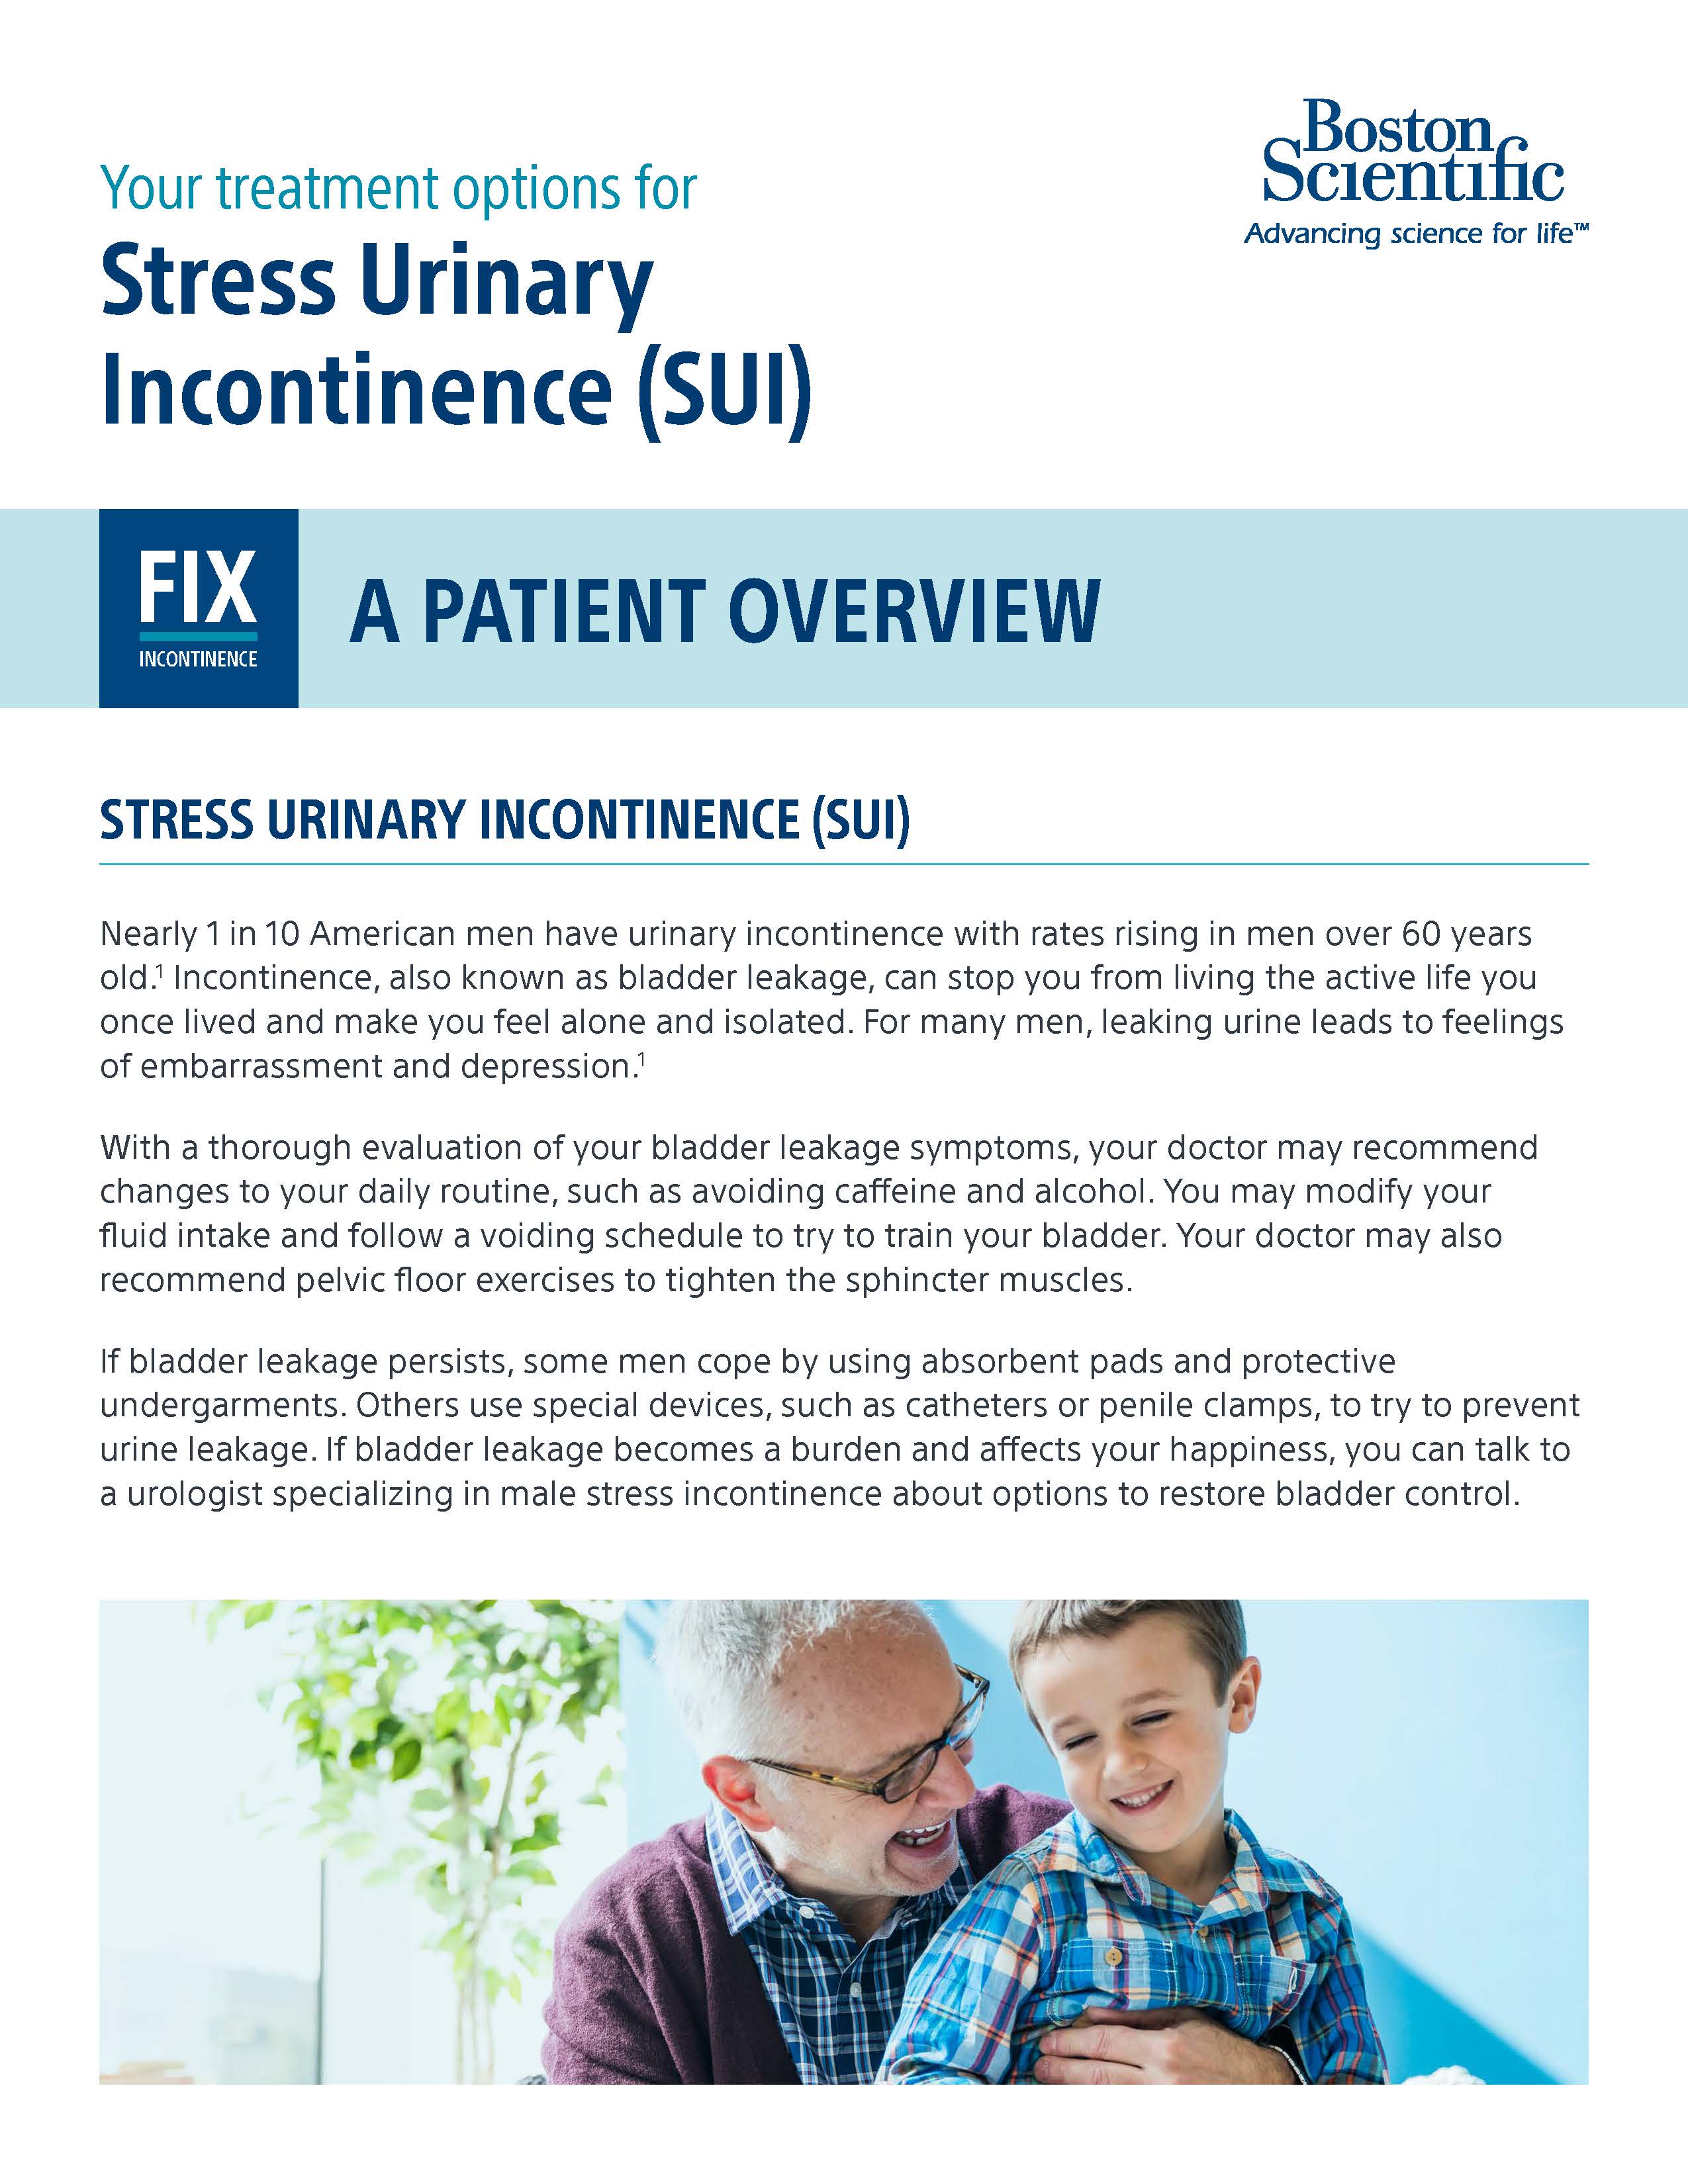 Treatment Options for SUI - Patient Education Brochure